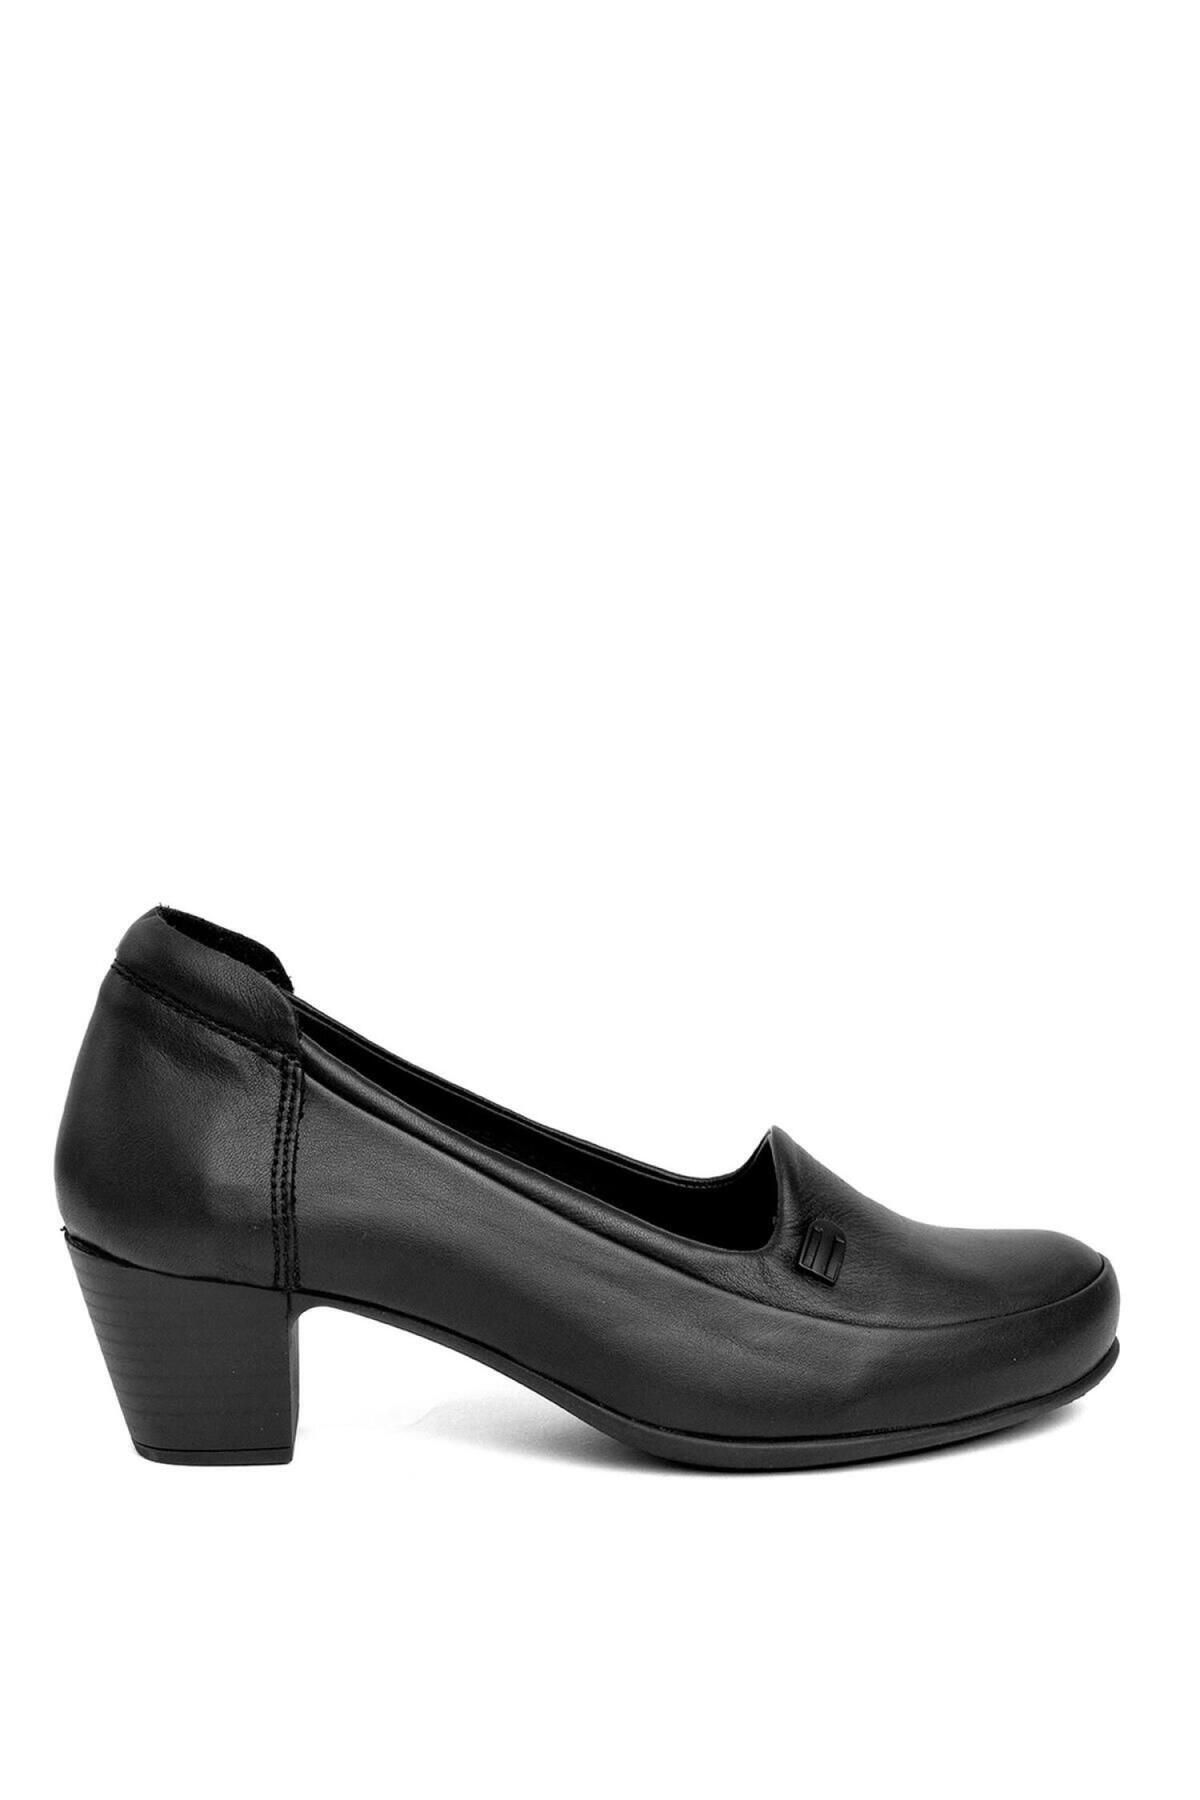 Mammamia D24Ya-3840 Kadın Topuklu Deri Ayakkabı